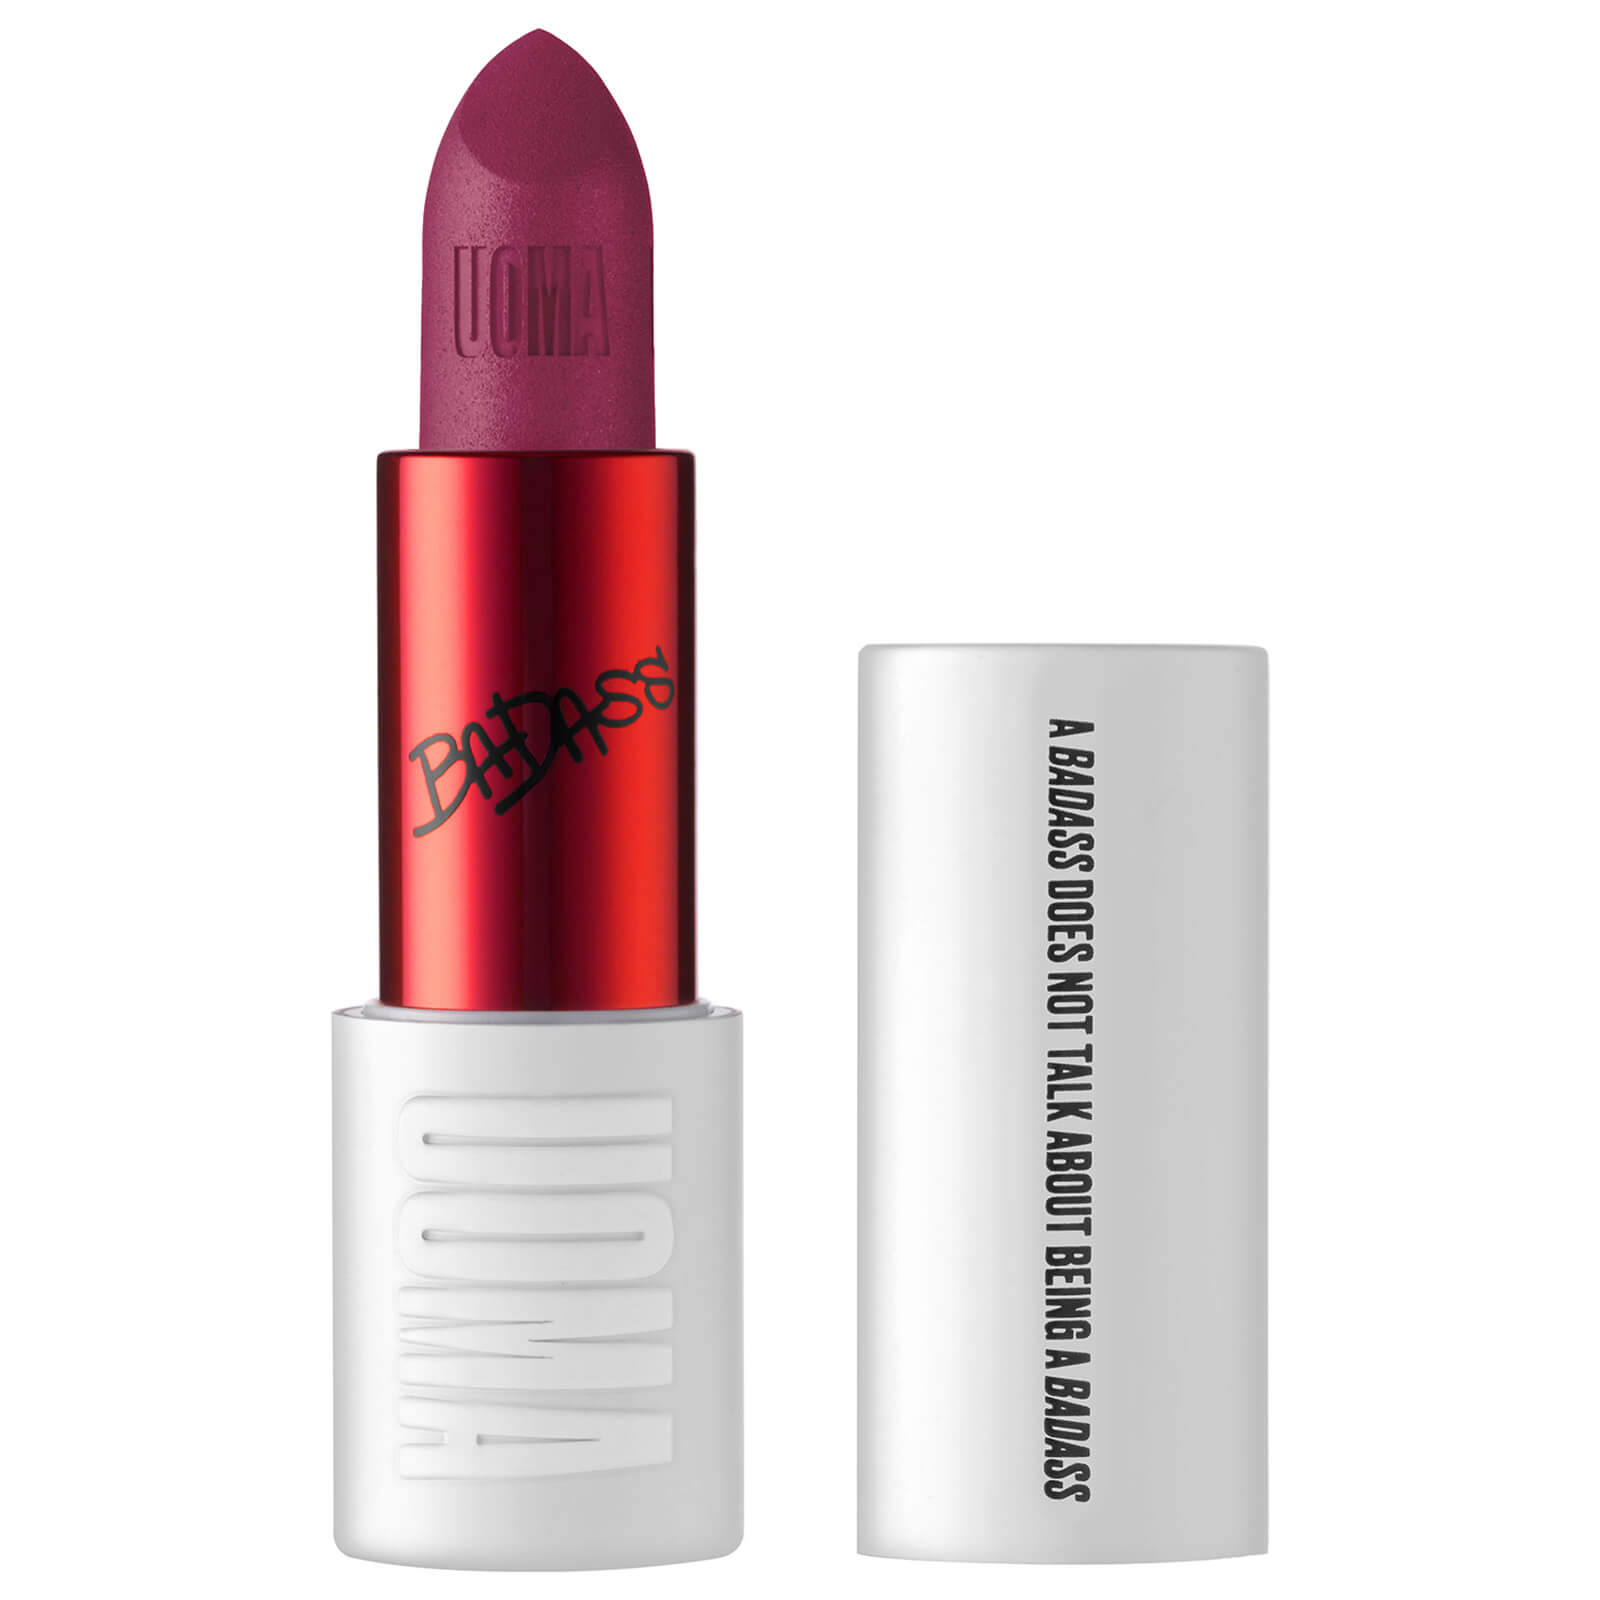 uoma beauty badass icon concentrated matte lipstick 3.5ml (verschiedene farbtÃ¶ne) - funmilayo